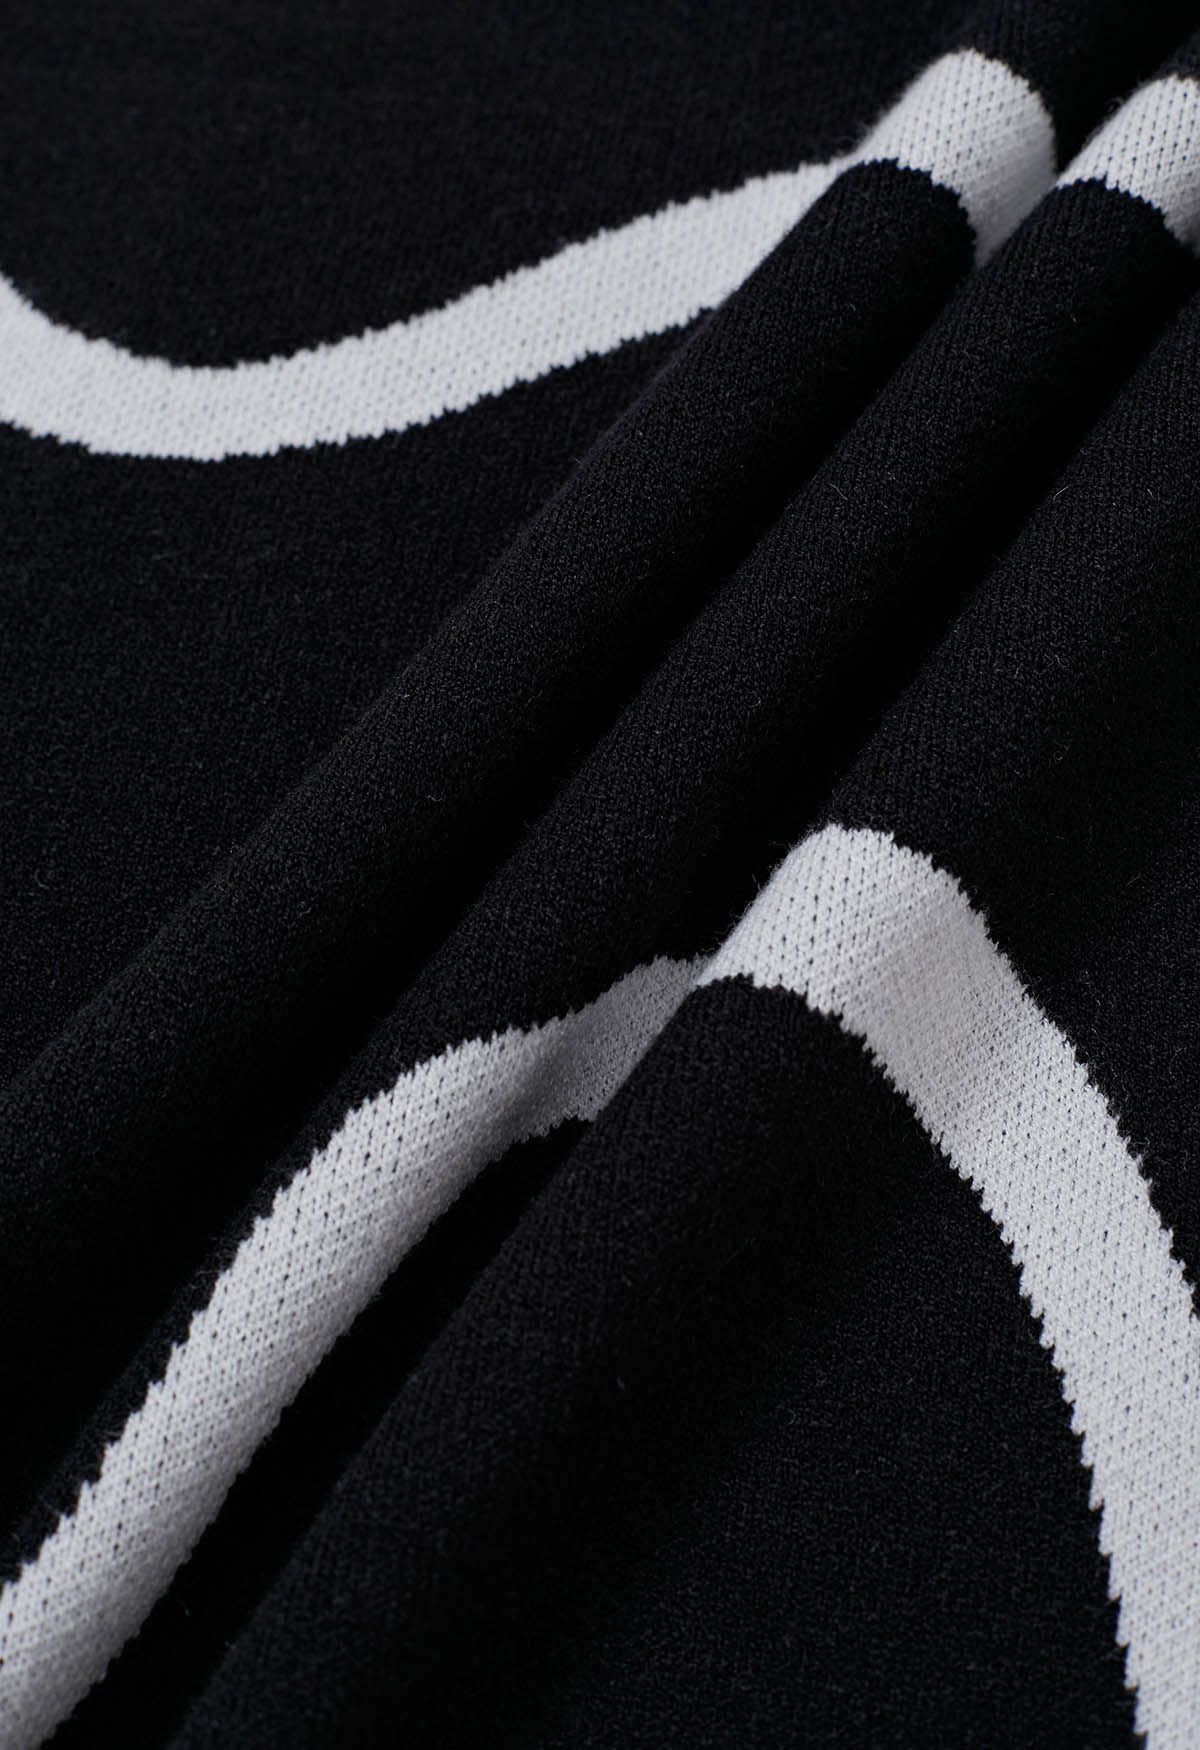 Wavy Print Knit Cami Dress in Black